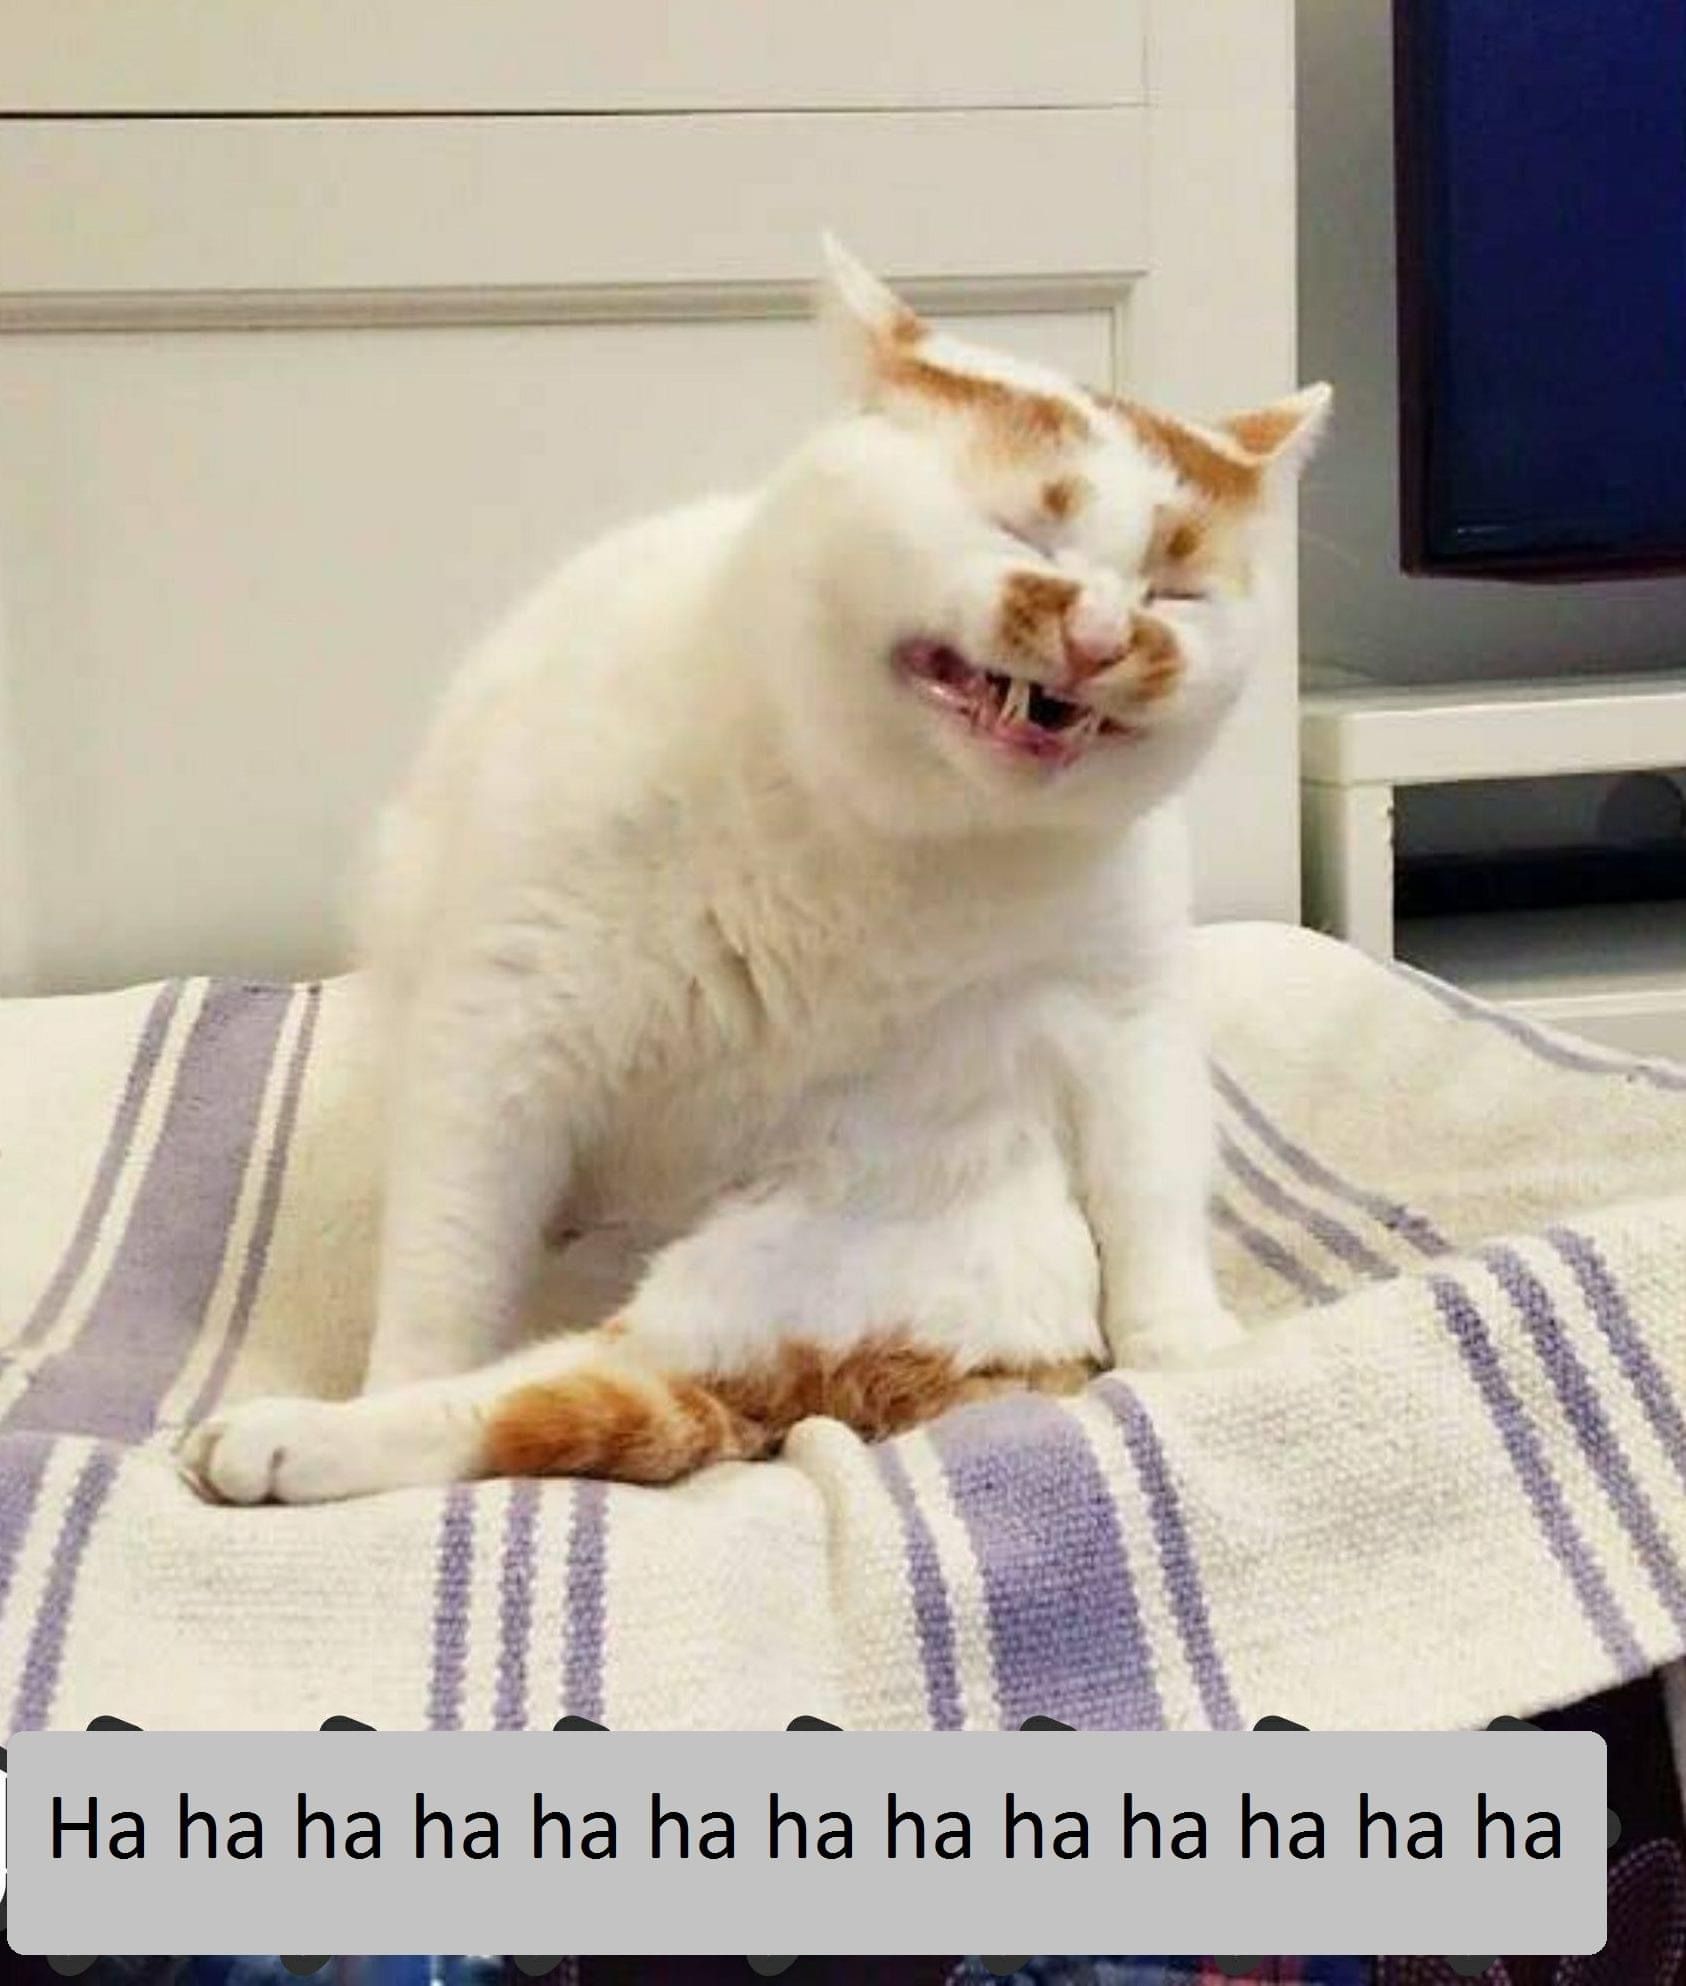 Meme Mèo: Cười vỡ bụng với những mẫu meme mèo siêu hài hước và đáng yêu trong ảnh, sẽ khiến bạn thay đổi cảm xúc sau những giờ làm việc căng thẳng.